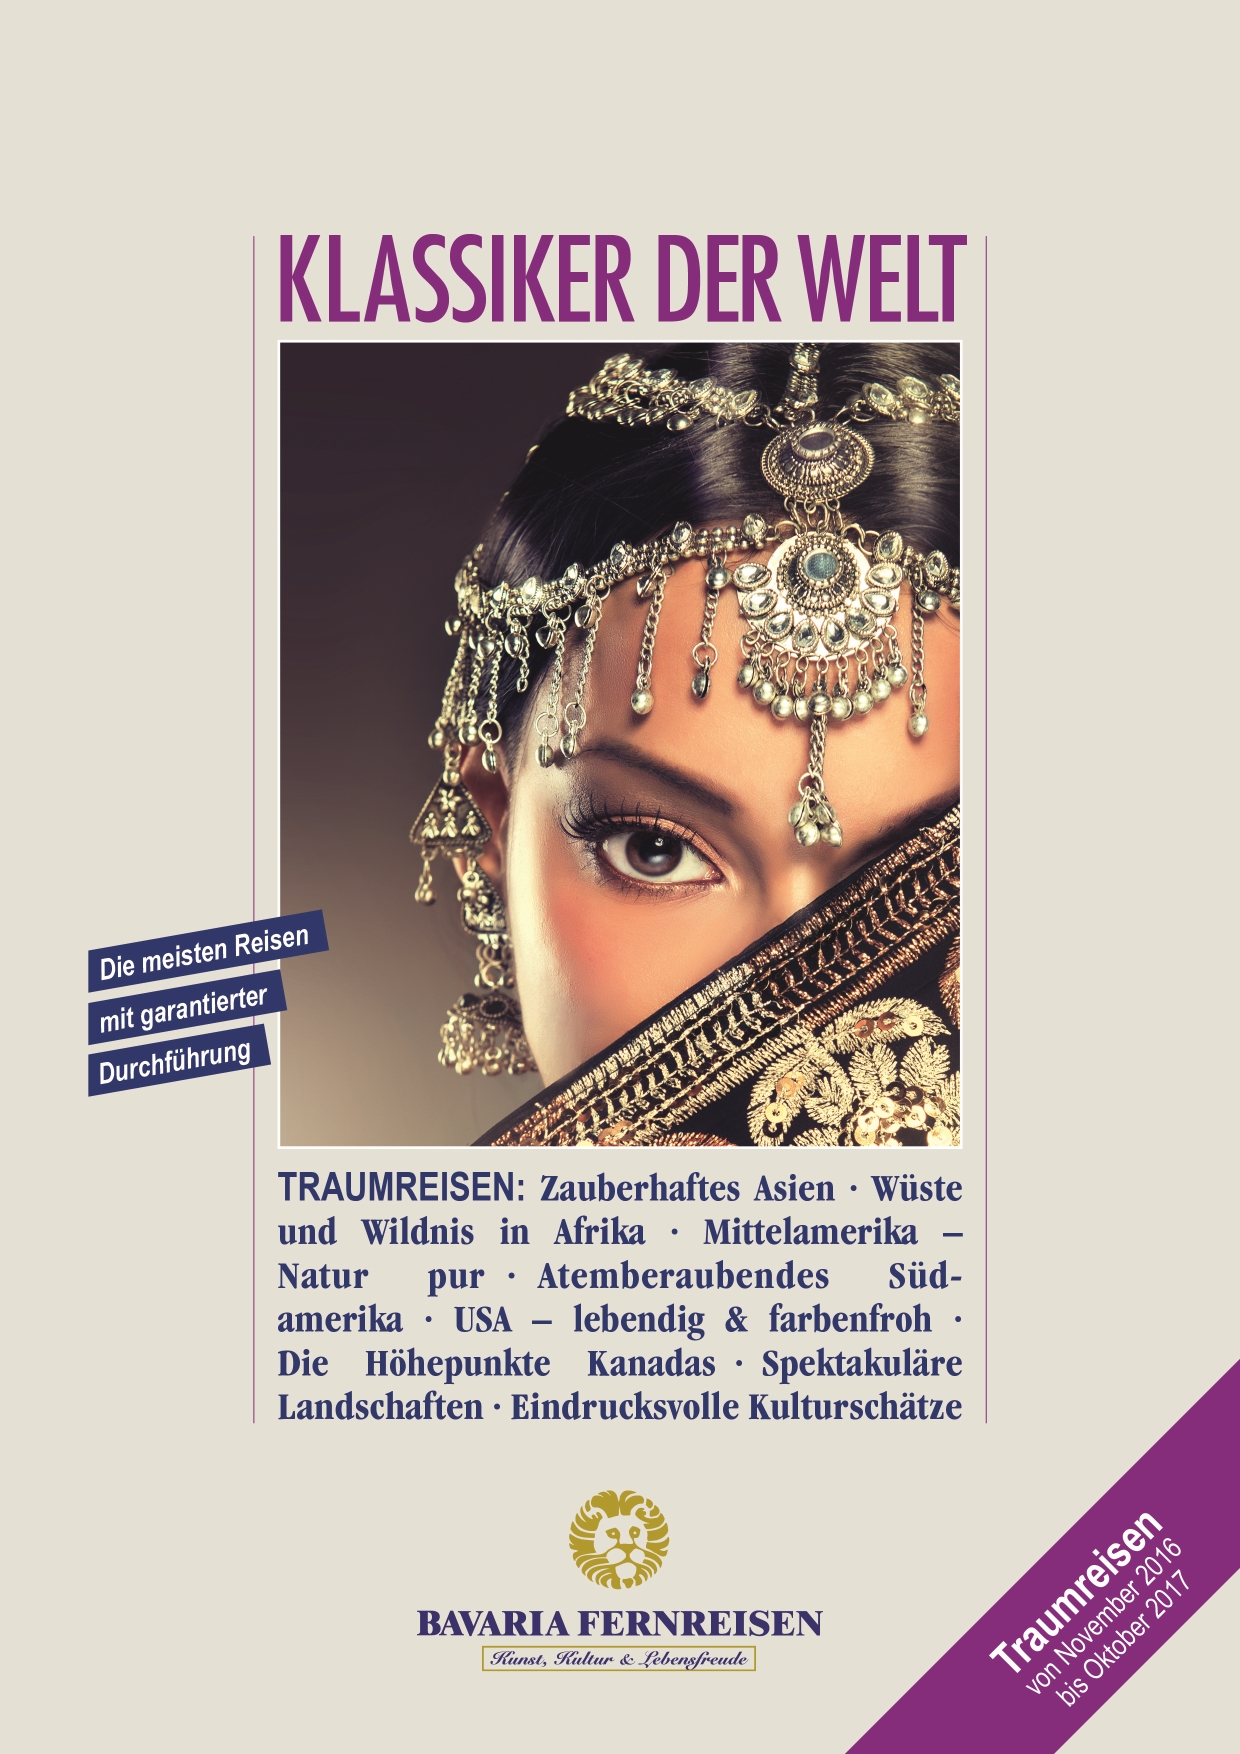 Bavaria Katalog-2017 Klassiker 171016 Titel 01